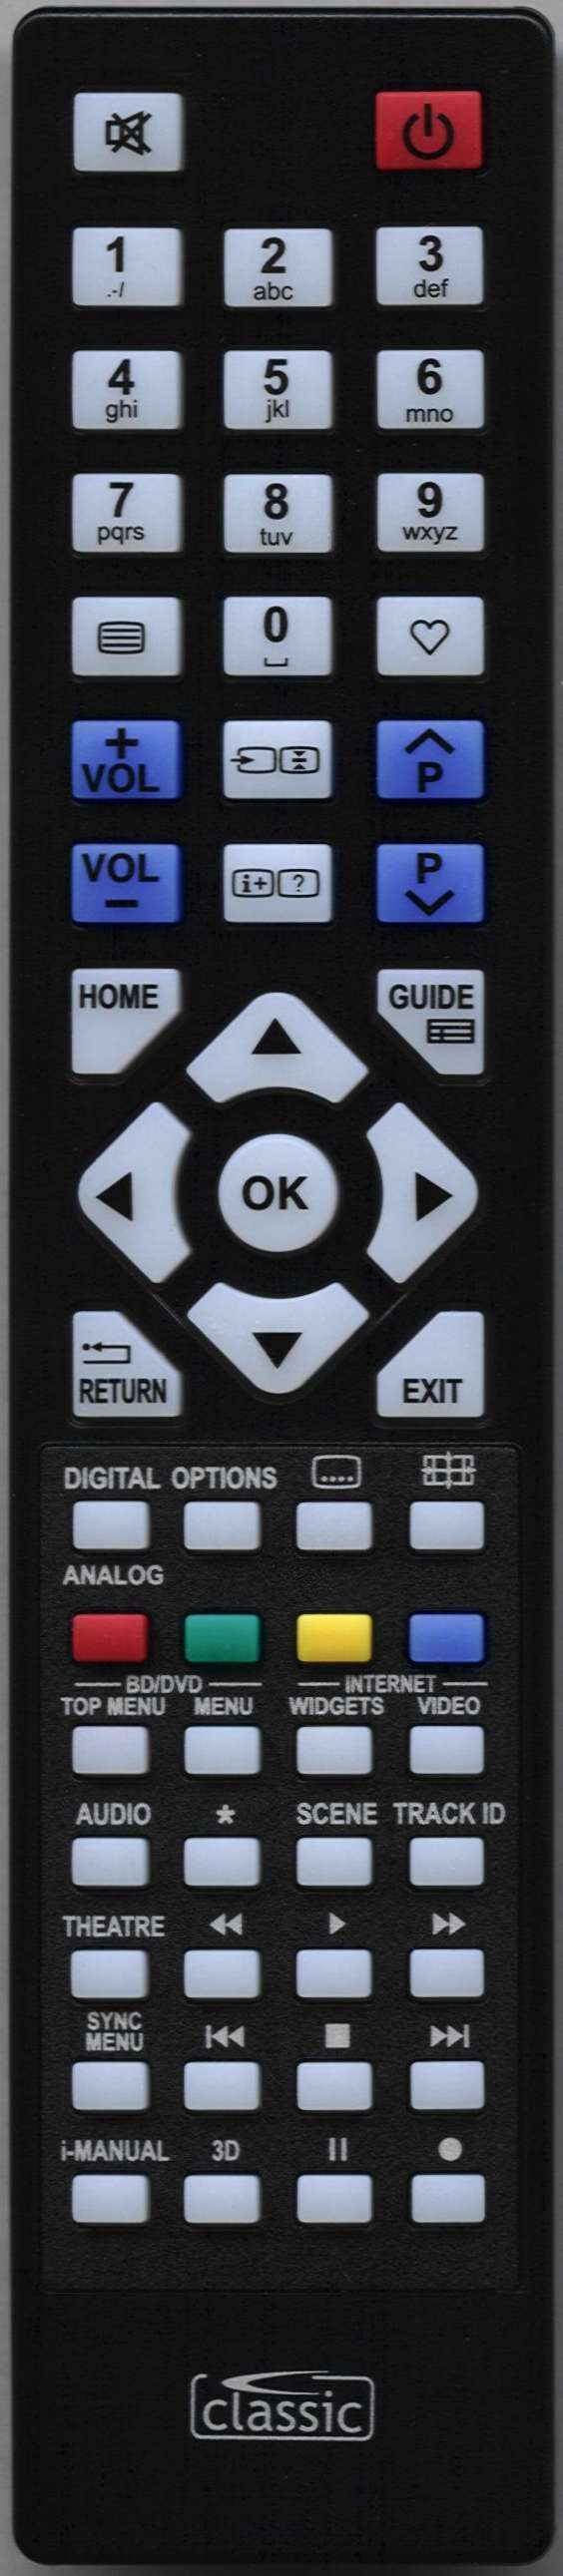 SONY KDL-32CX523 Remote Control Alternative